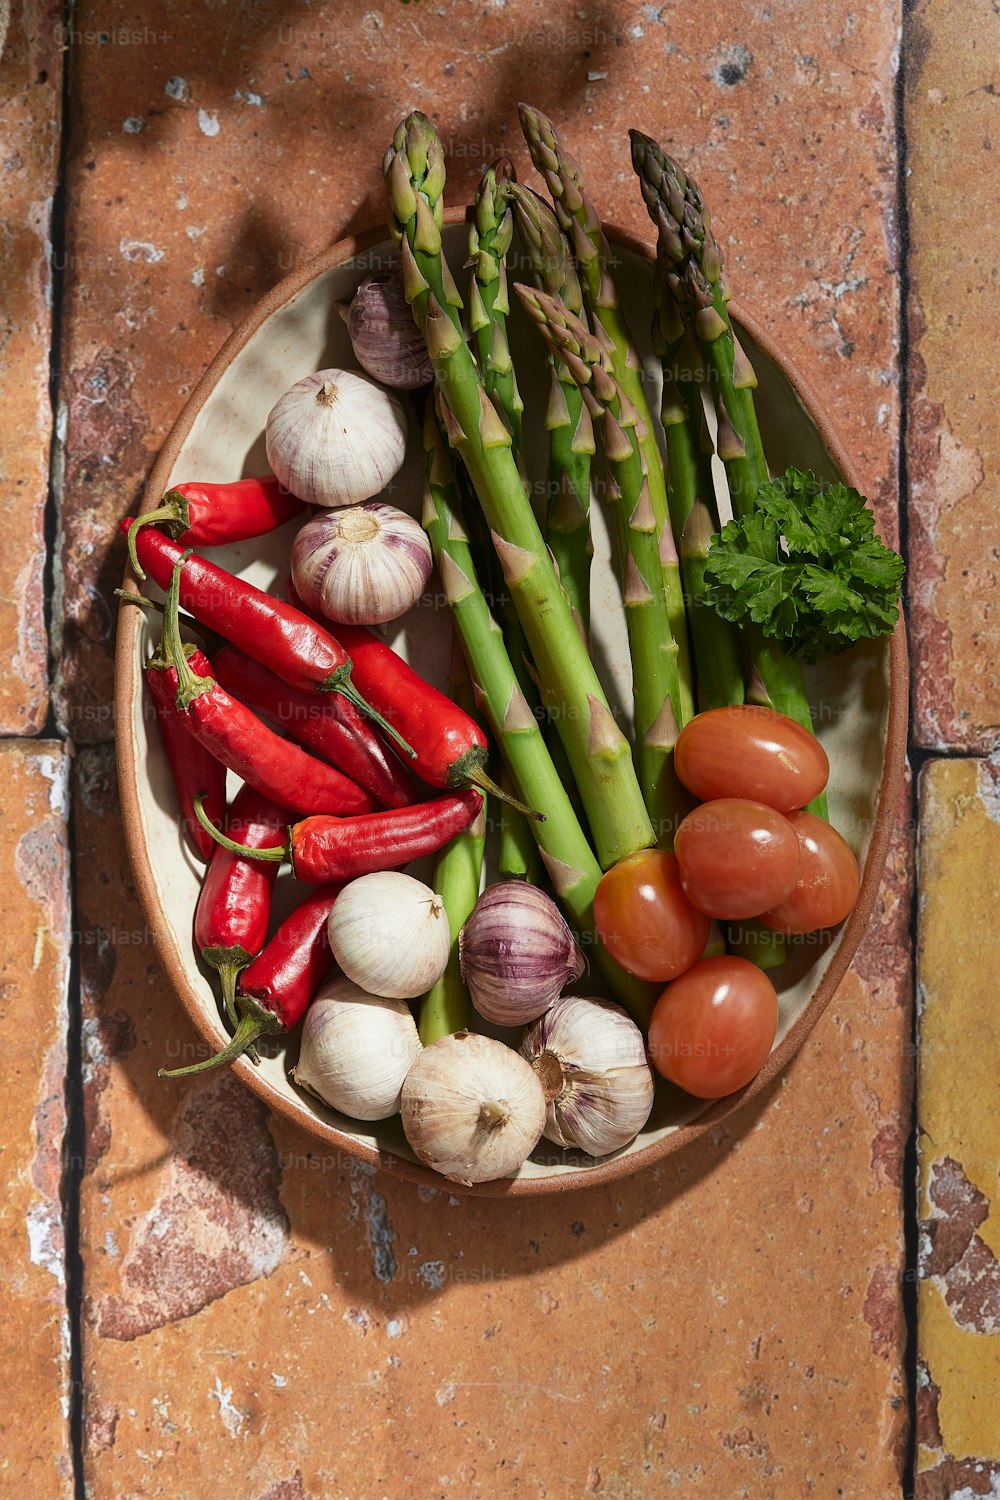 Un plato con espárragos, tomates, espárragos y otras verduras